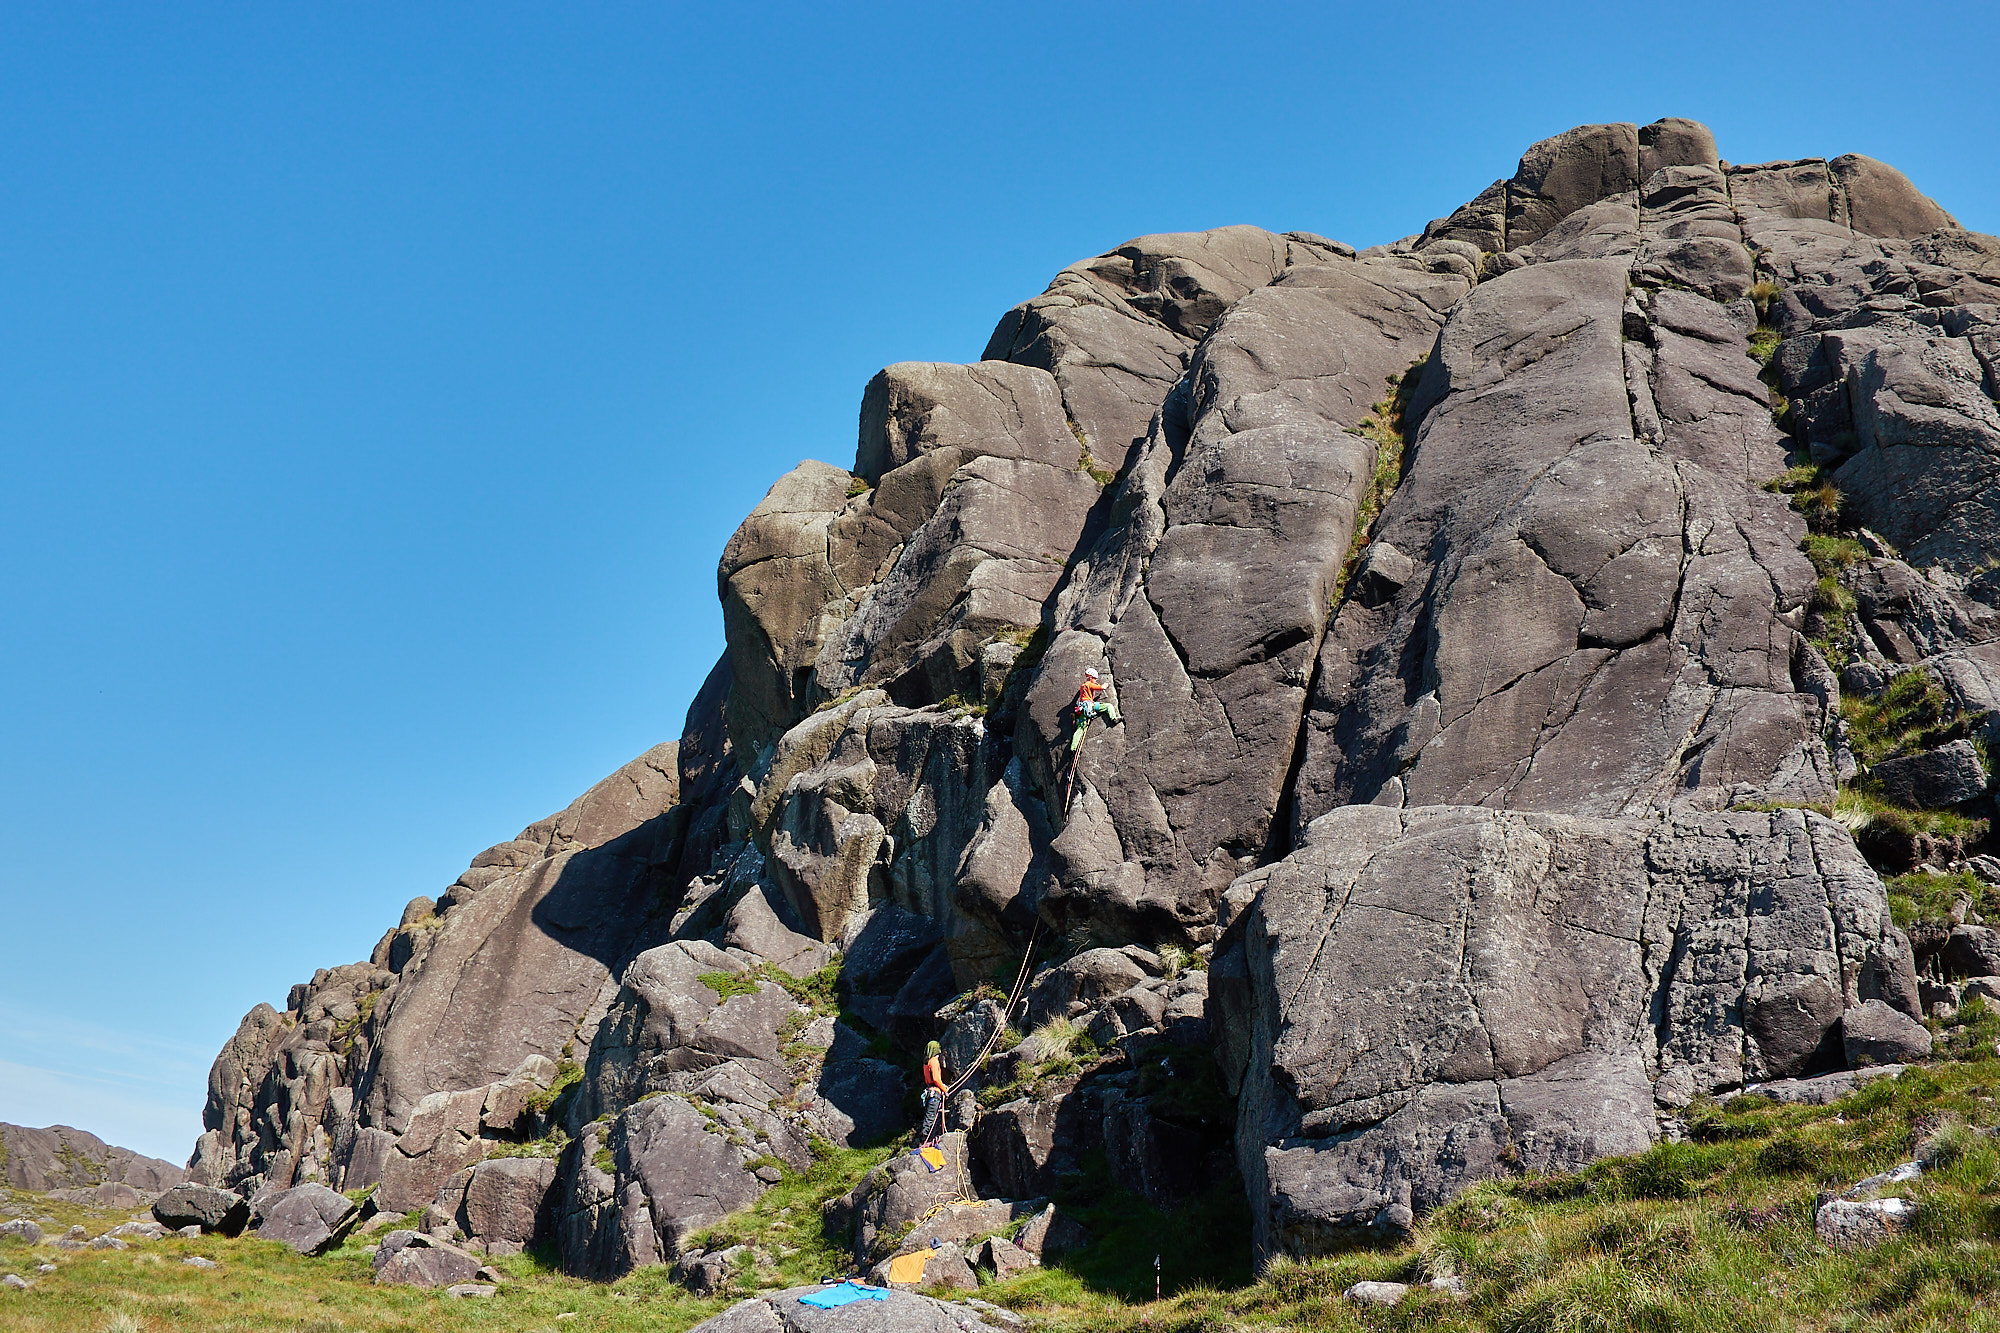 scottish summer rock climbing on yir in ardnamurchan